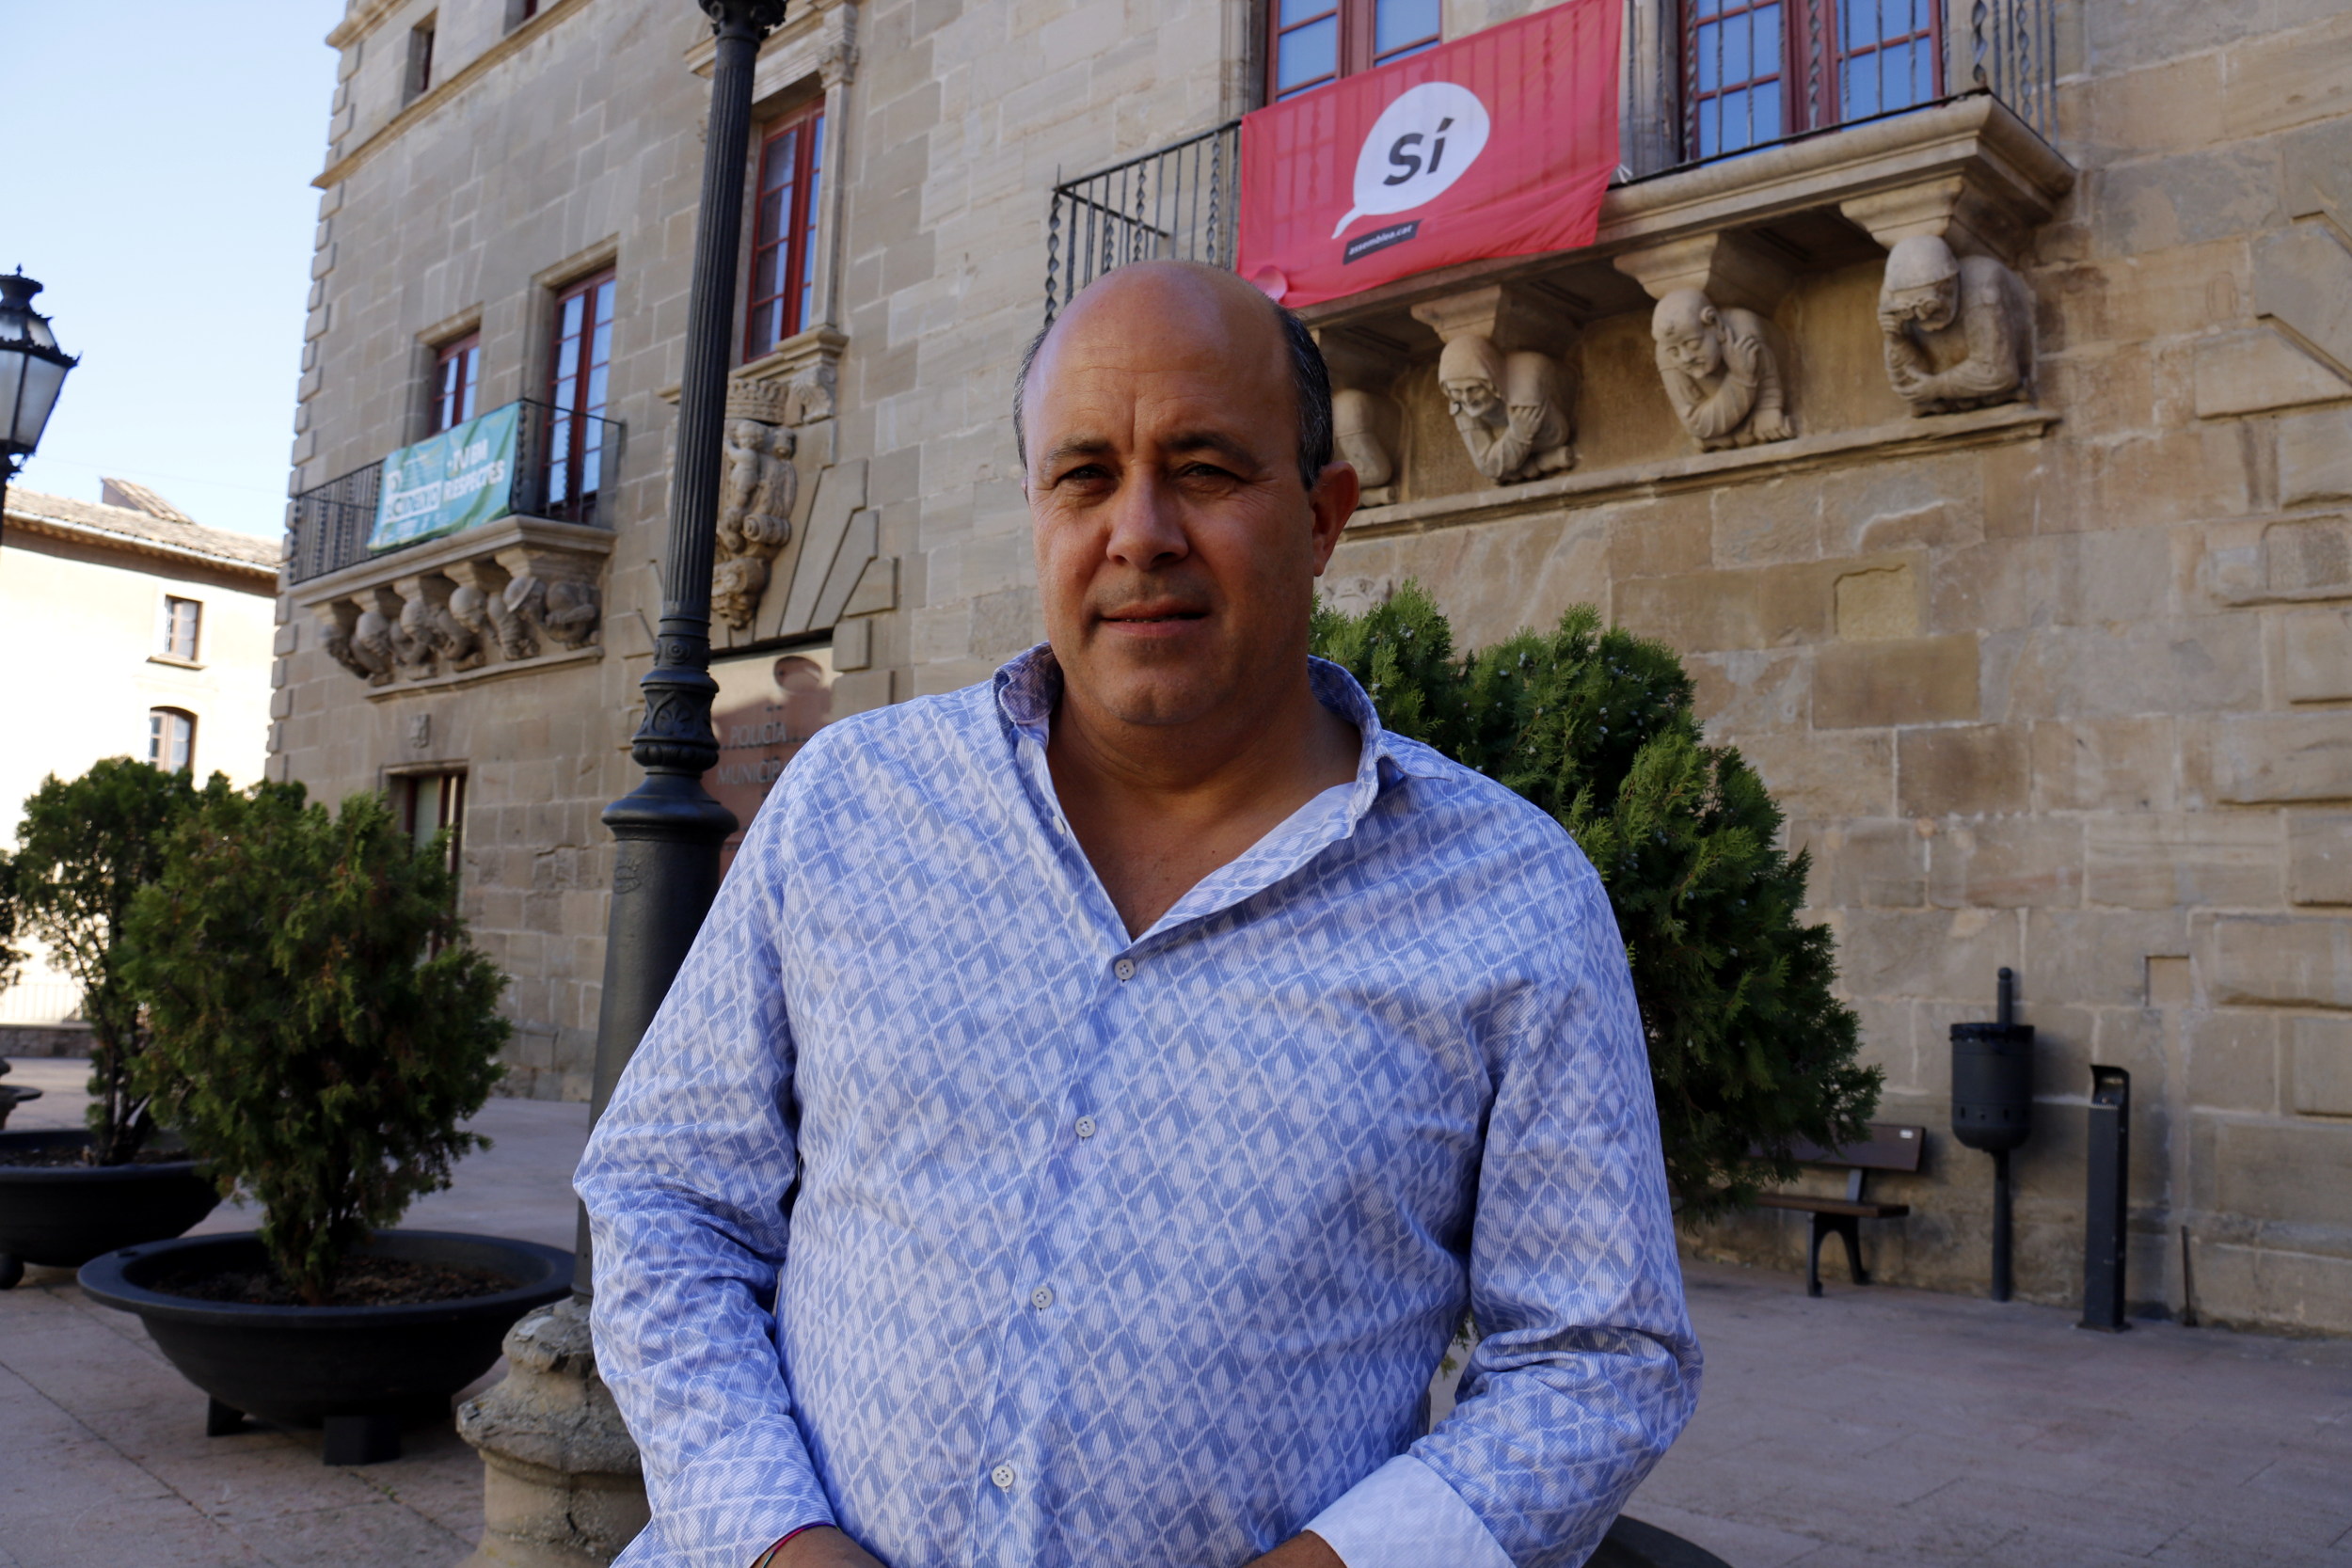 L’alcalde de Cervera Ramon Royes declararà dimecres al jutjat de la capital de la comarca per col·laborar  amb l’1-O